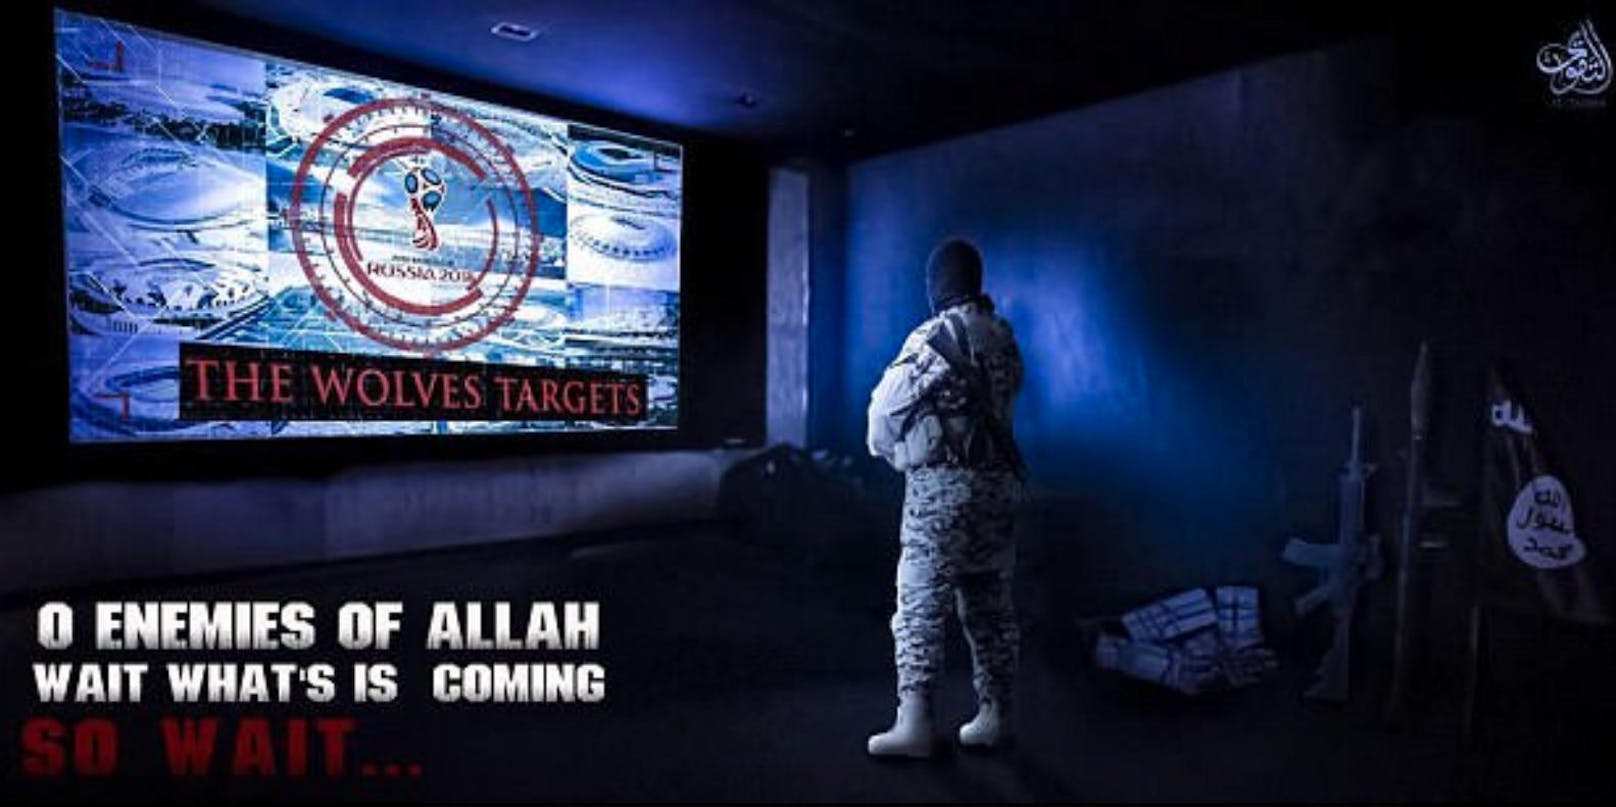 Ein Kämpfer beobachtet WM-Veranstaltungsorte auf Video-Bildschirmen. "Die Ziele der Wölfe", steht auf dem Monitor. Darunter: "Feinde Allahs, wartet auf das, was kommen wird."